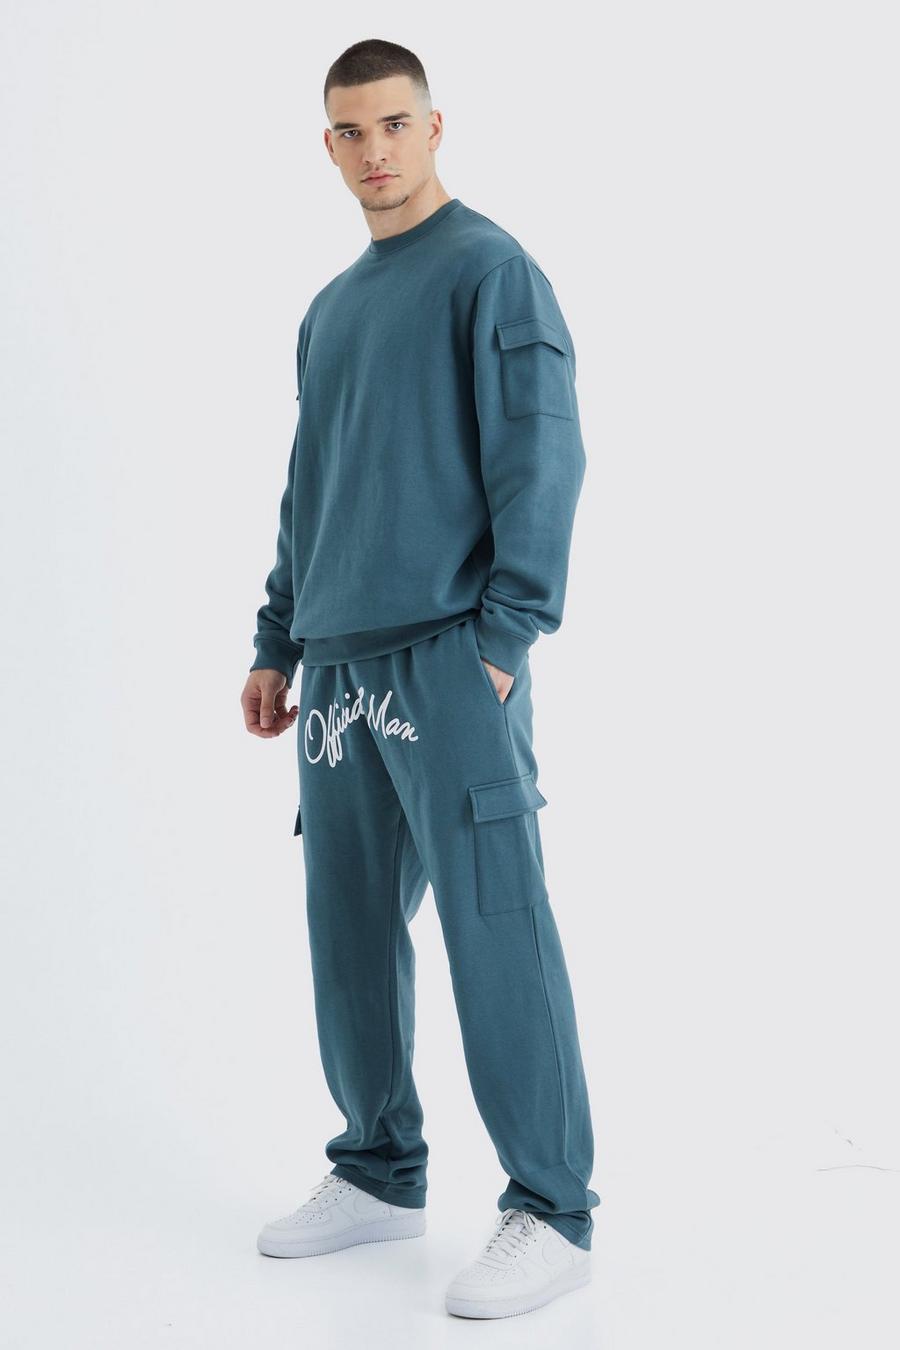 Slate blue Tall Cargo Pocket Crotch Sweatshirt Tracksuit